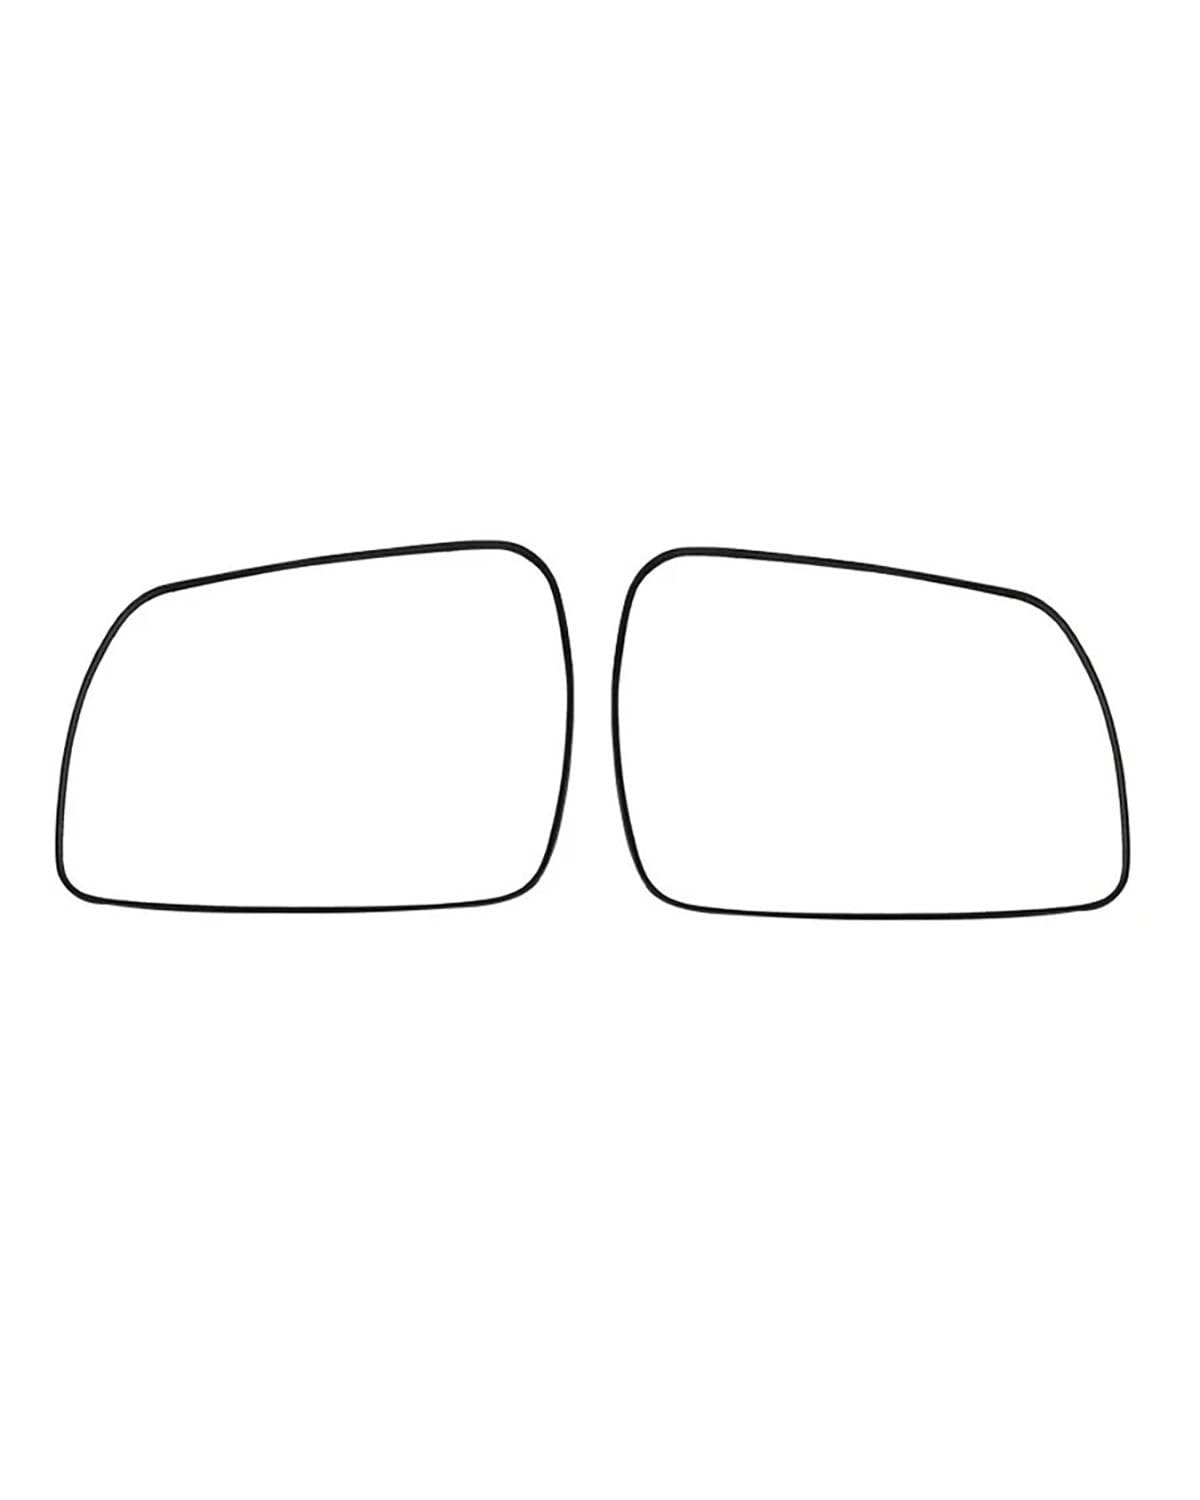 Außenspiegel Glas Für Kia Für Sportage R 2018-2021 Autozubehör Außenspiegel Reflektierende Linse Rückspiegelglaslinsen 1 STÜCKE Rückspiegelglas(A pair heating) von MXDDWLKJ